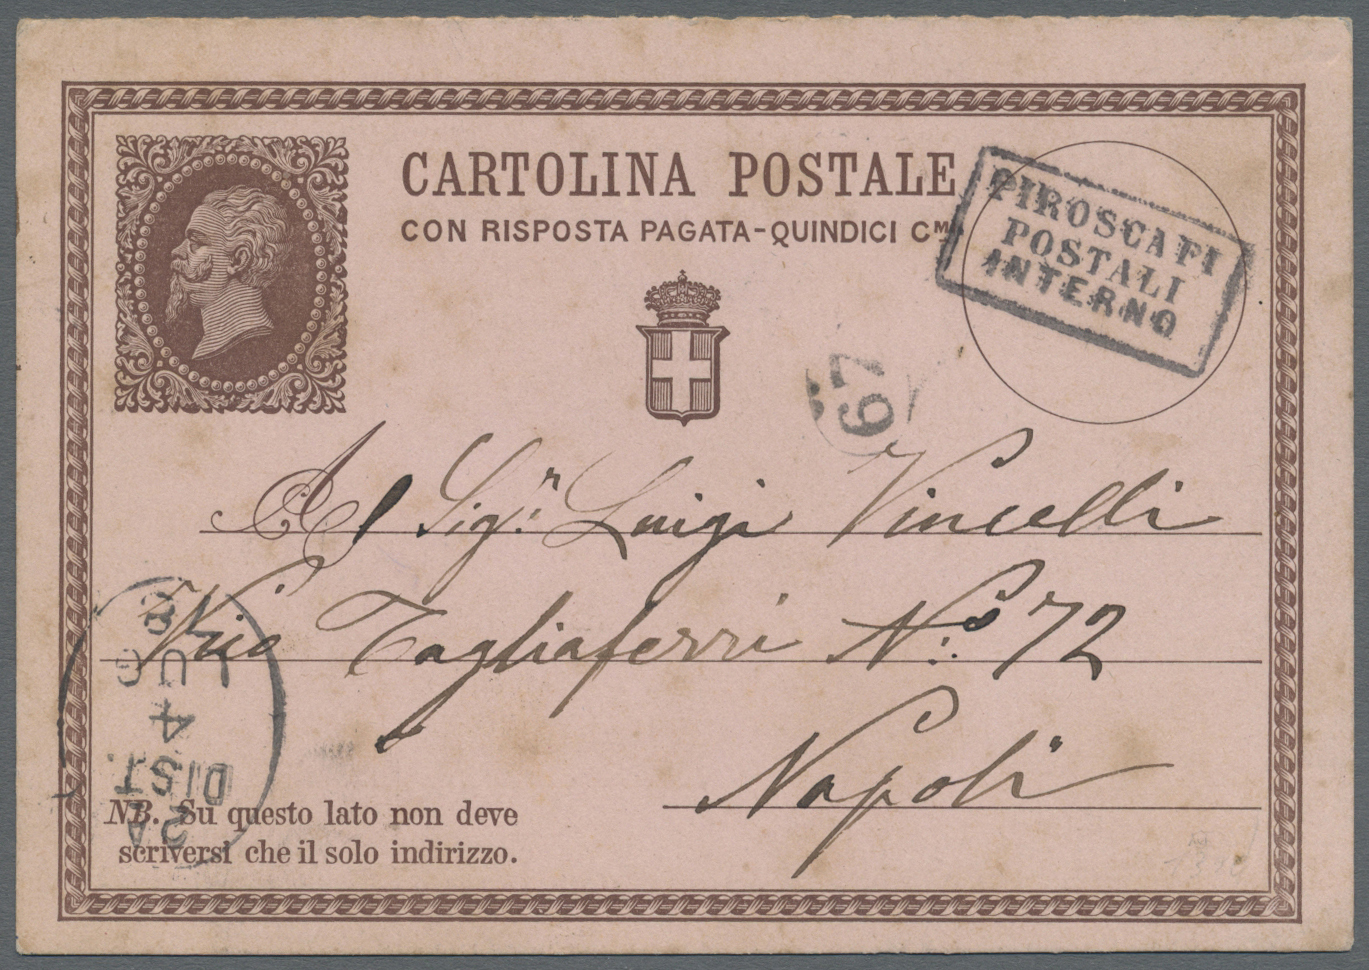 GA Italien - Stempel: 1878, Italian Postal Stationery "Cartolina Postale Con Risposta Pagata Quindici Cmi", Tied - Marcophilia